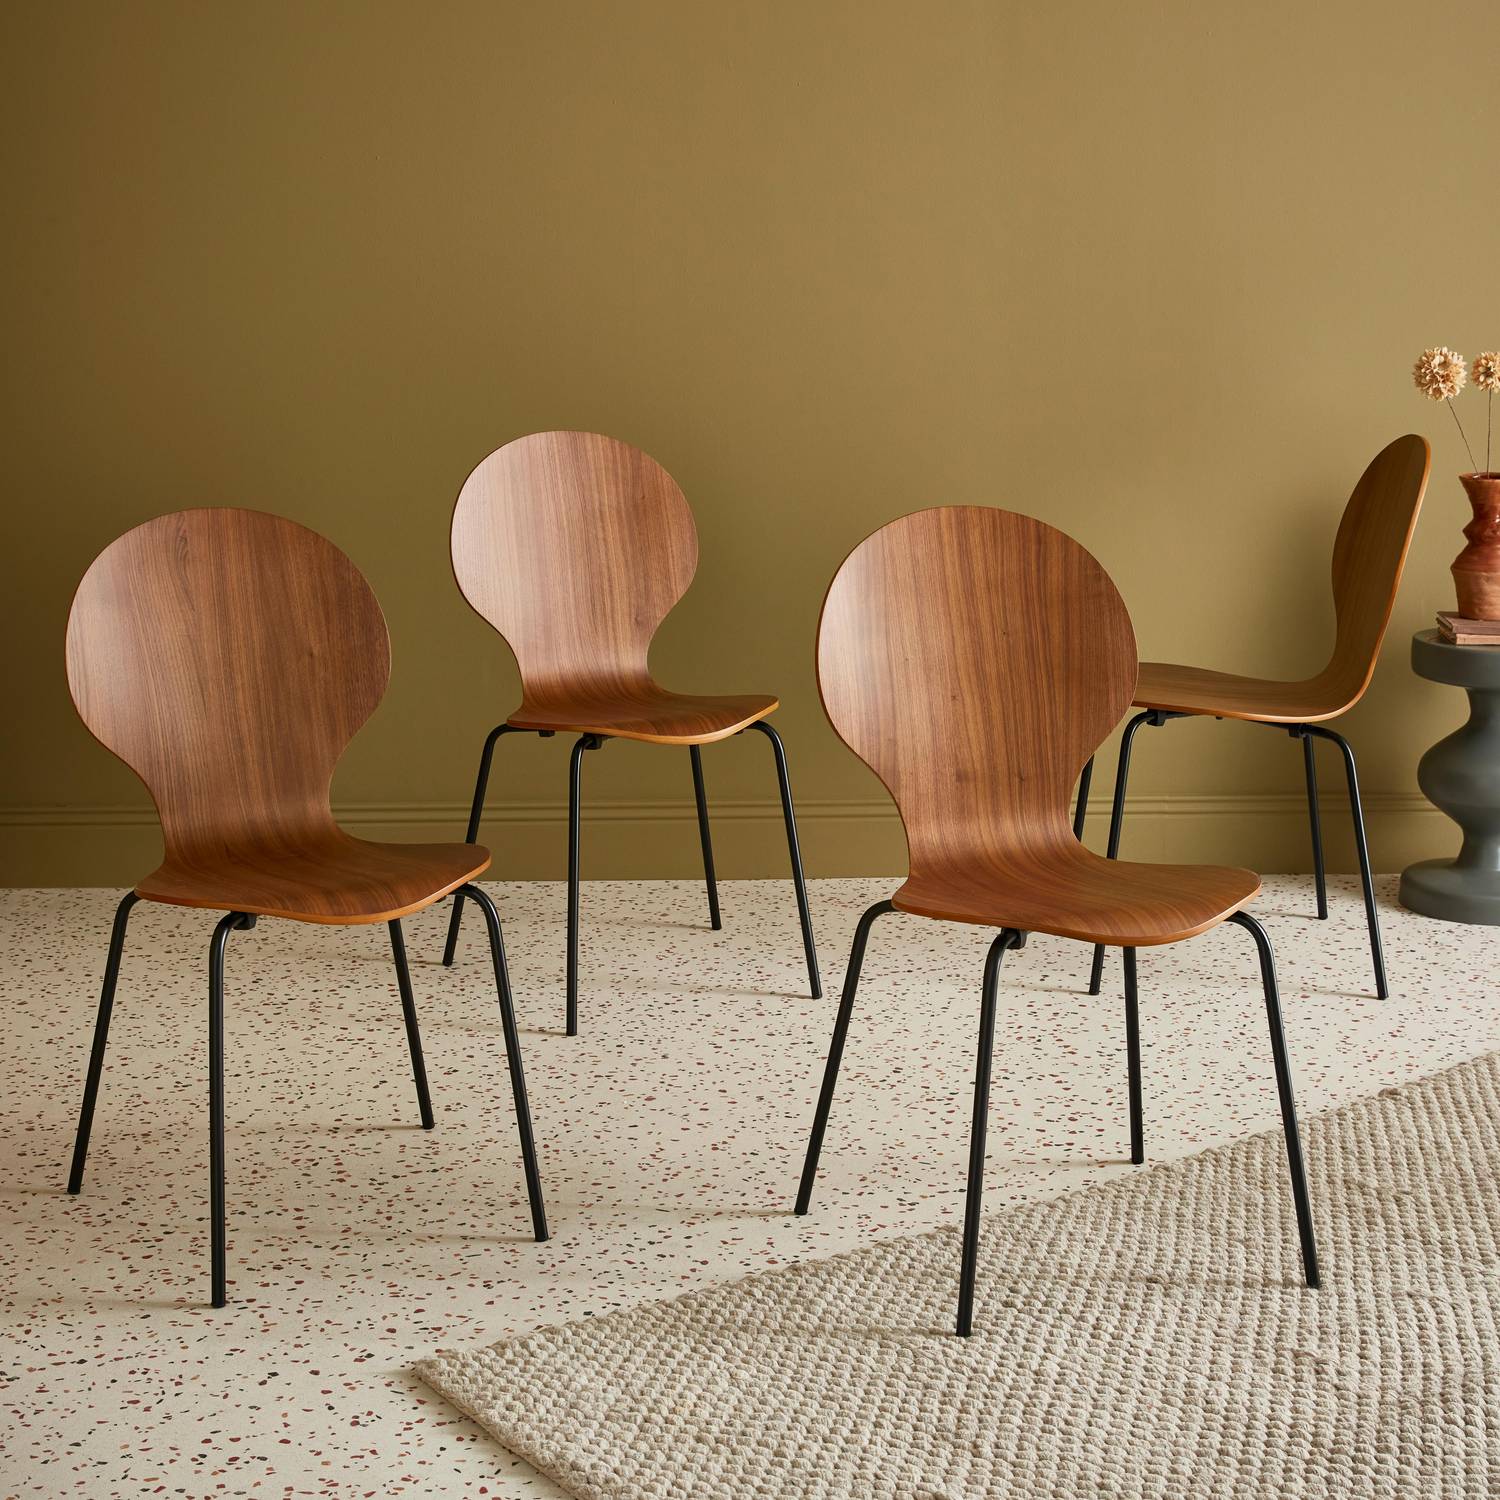 Conjunto de 4 cadeiras de nogueira, empilhamento retro, madeira de hevea e contraplacado, pernas de aço, Naomi, L 43 x P 48 x A 87cm Photo1